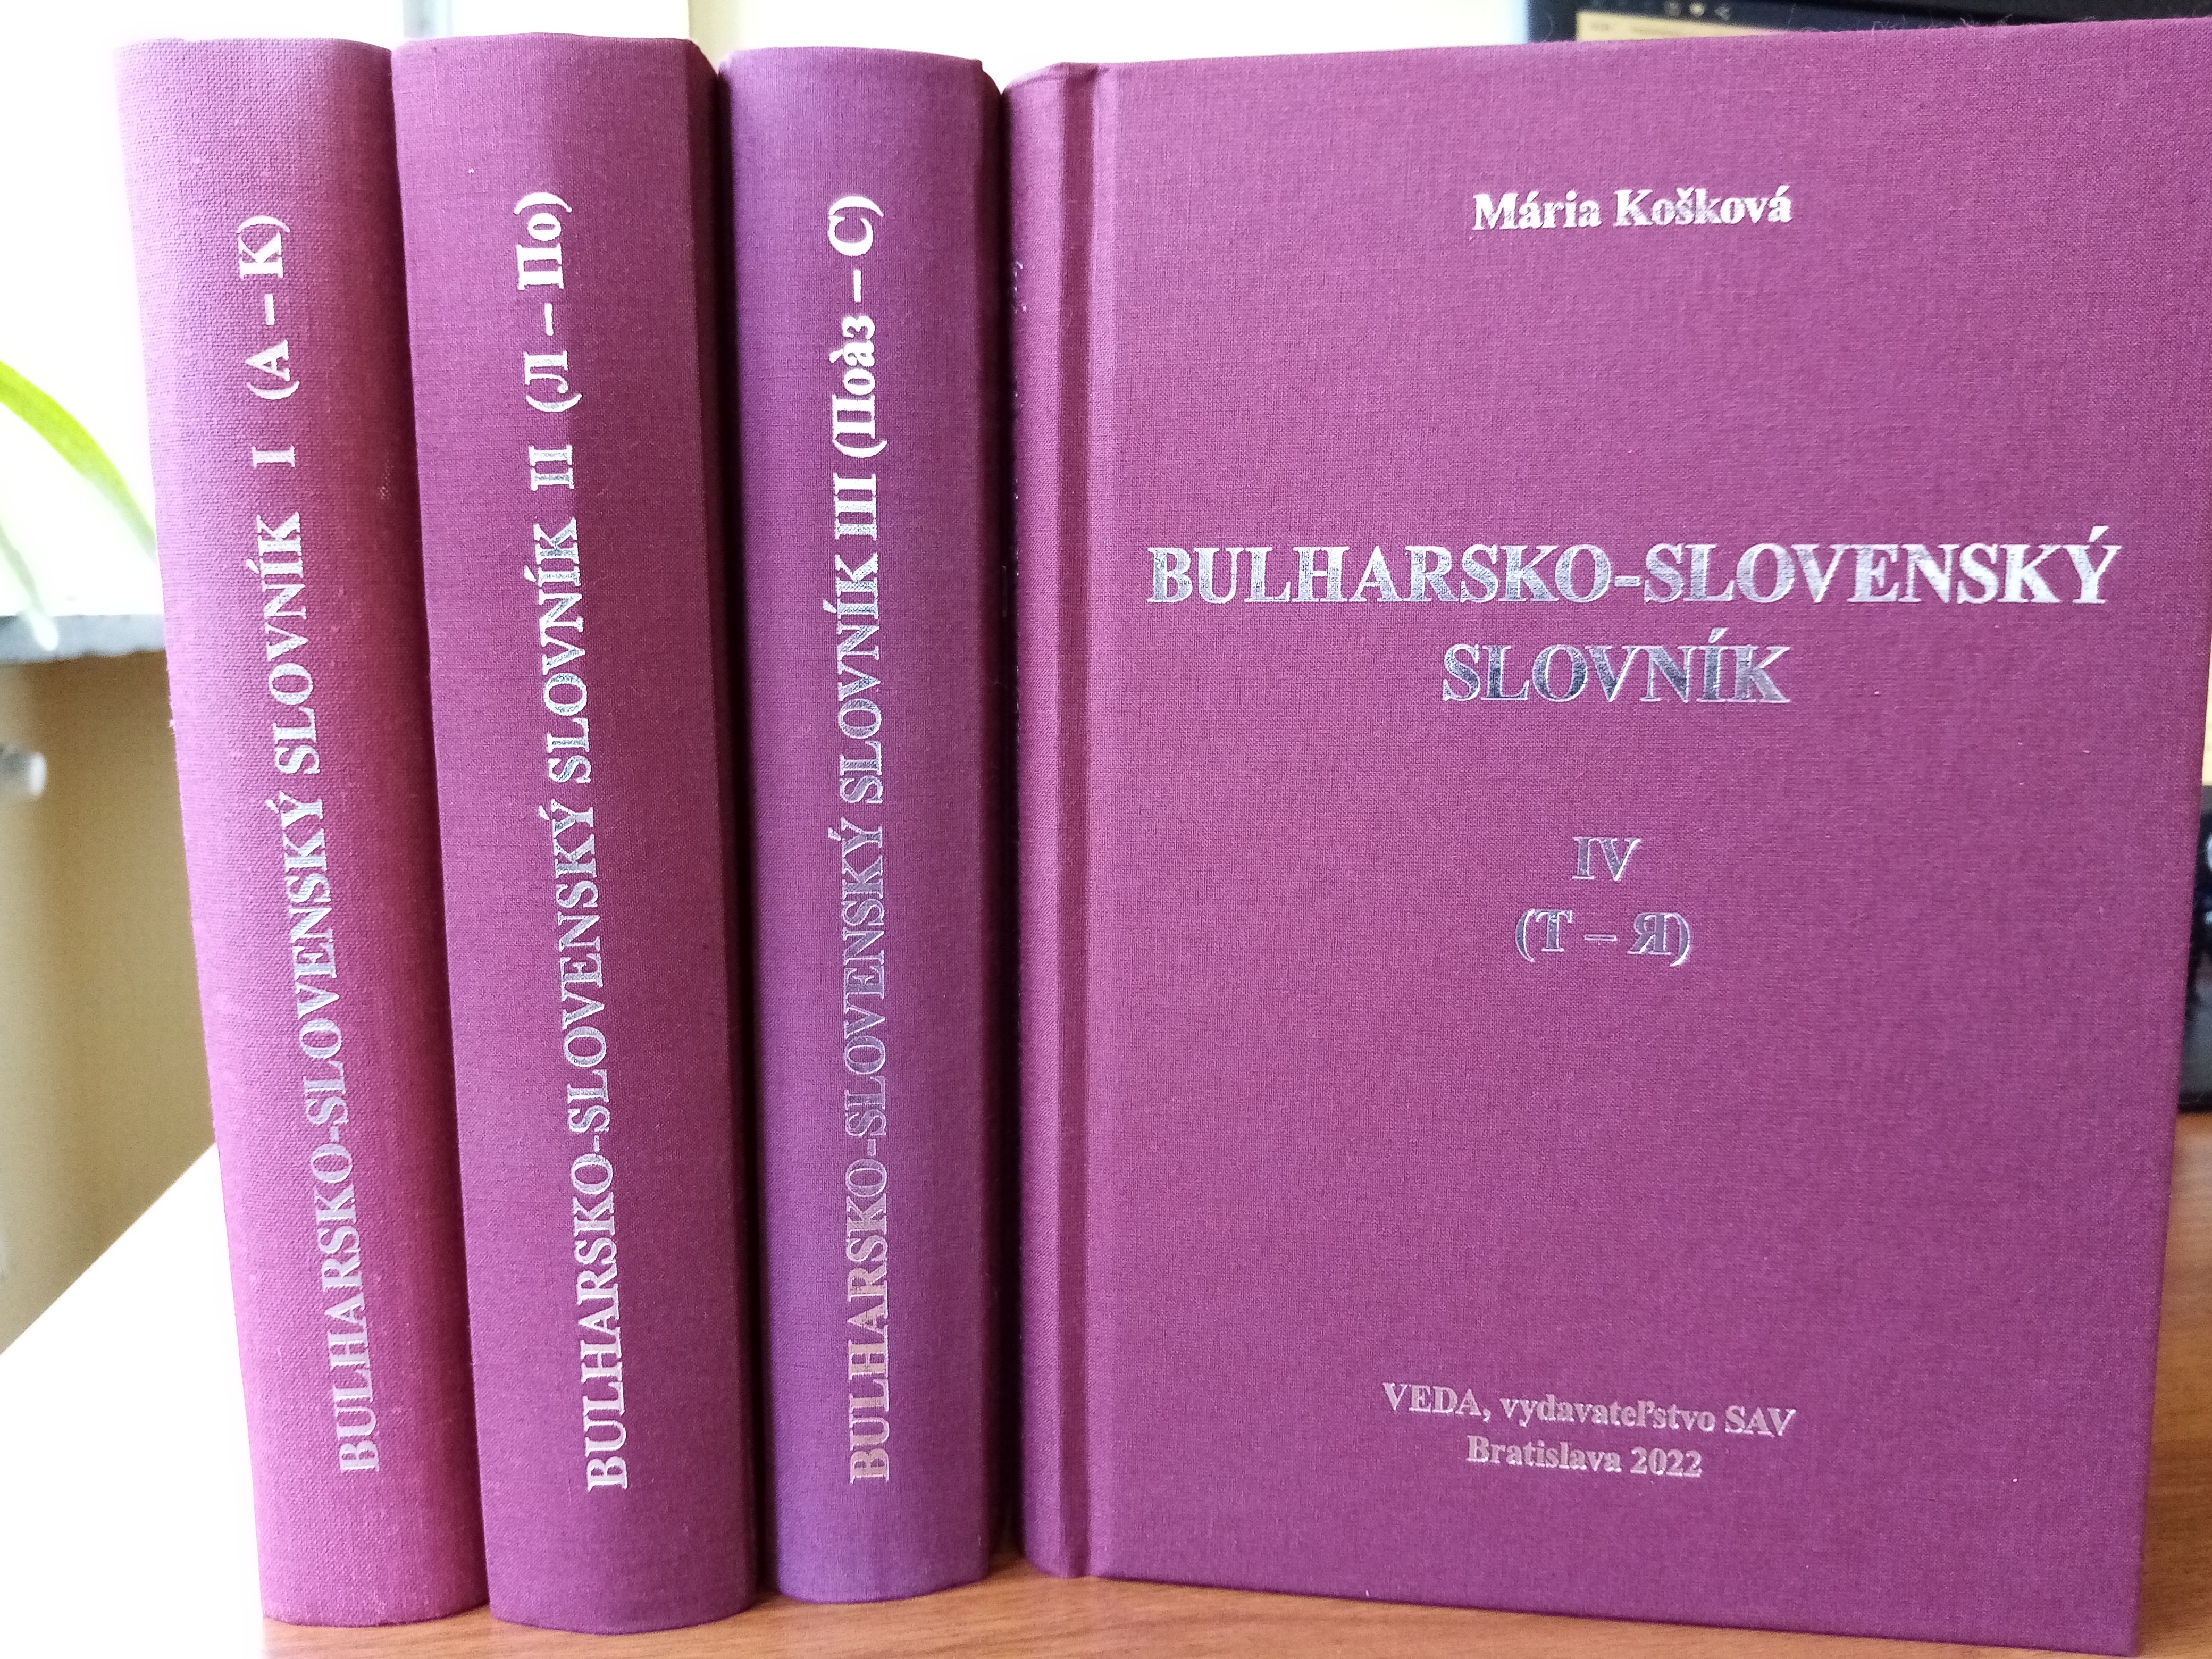 Представяне на „Българско-словашки речник“ в четири тома на Мария Кошкова